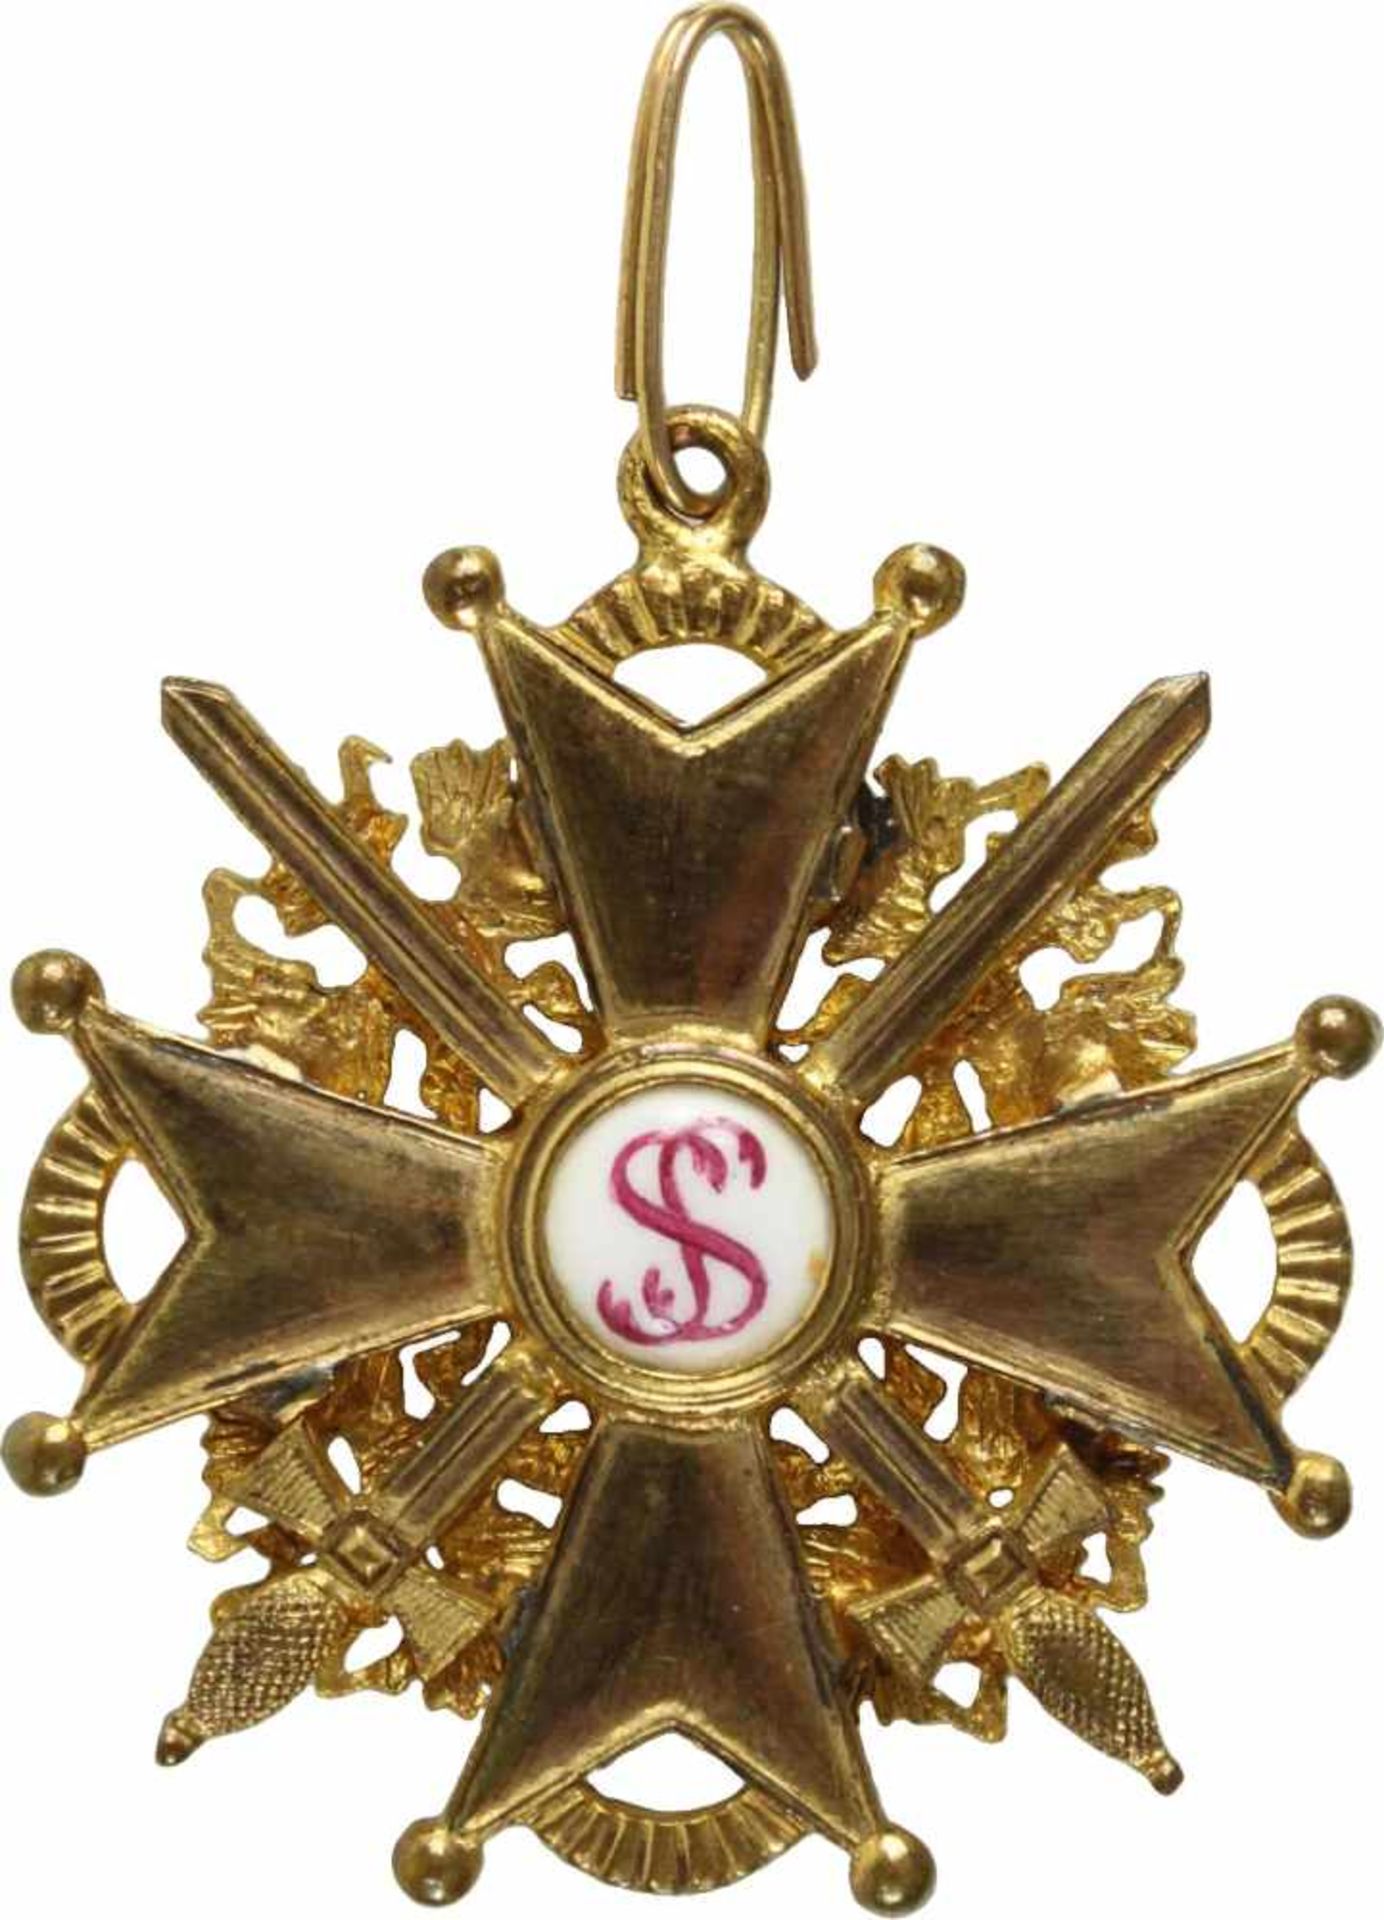 St. Stanislaus-Orden,Kreuz 3. Klasse mit Schwertern. Kreuz Bronze vergoldet und emailliert, 38mm. - Bild 2 aus 2